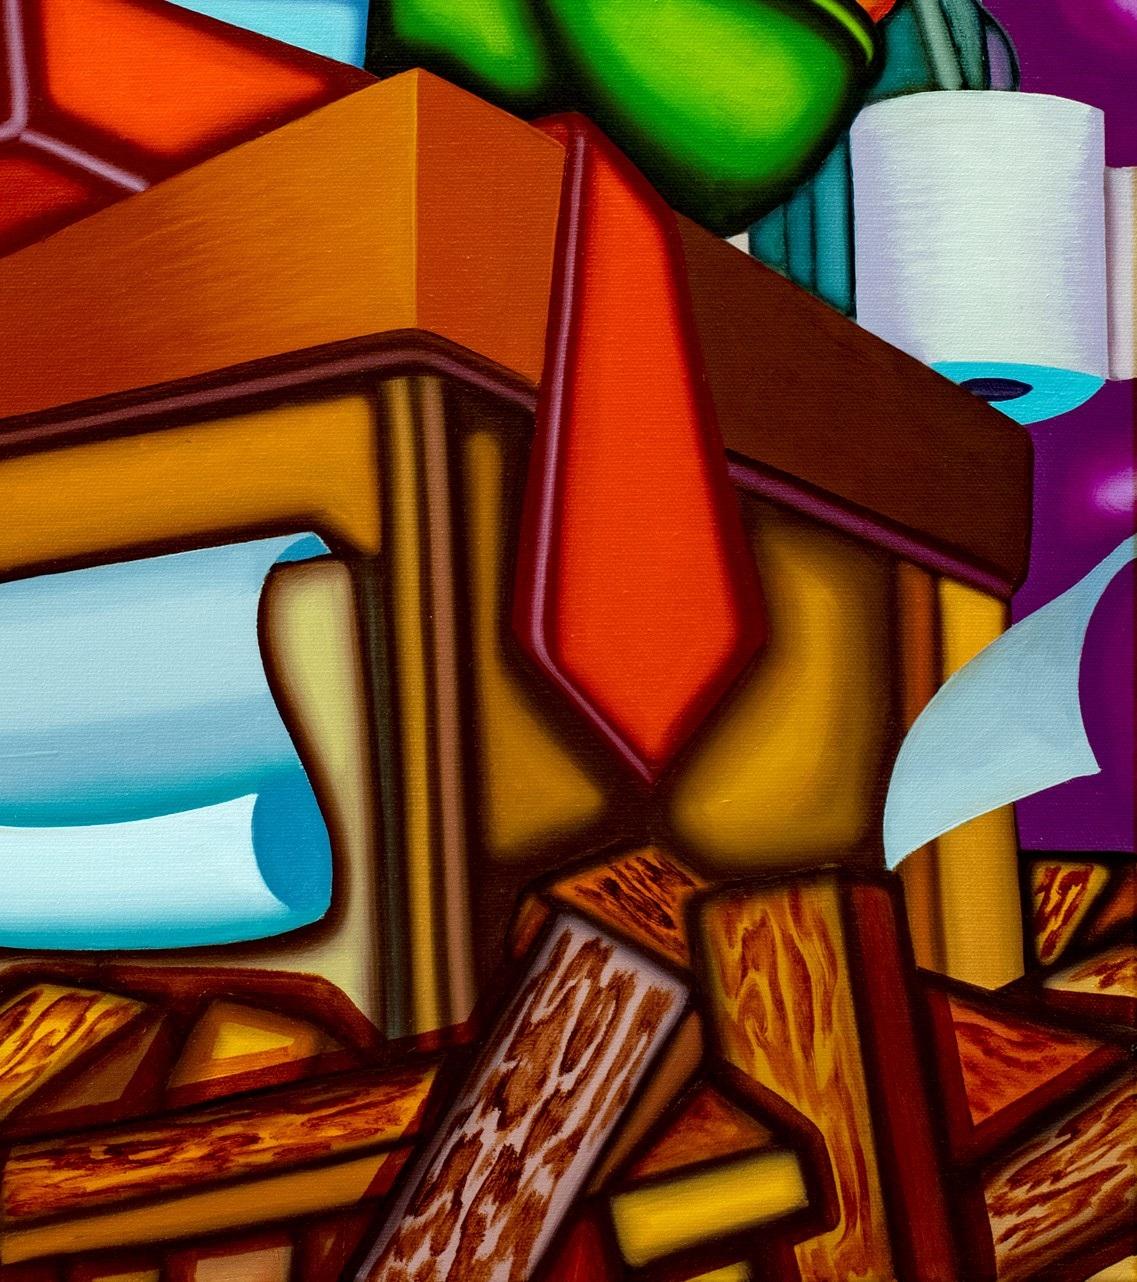 AS AB ABOVE SO BELOW - Kubistisches, surreales Stillleben mit kräftigen Farben (Braun), Interior Painting, von Jason Stout